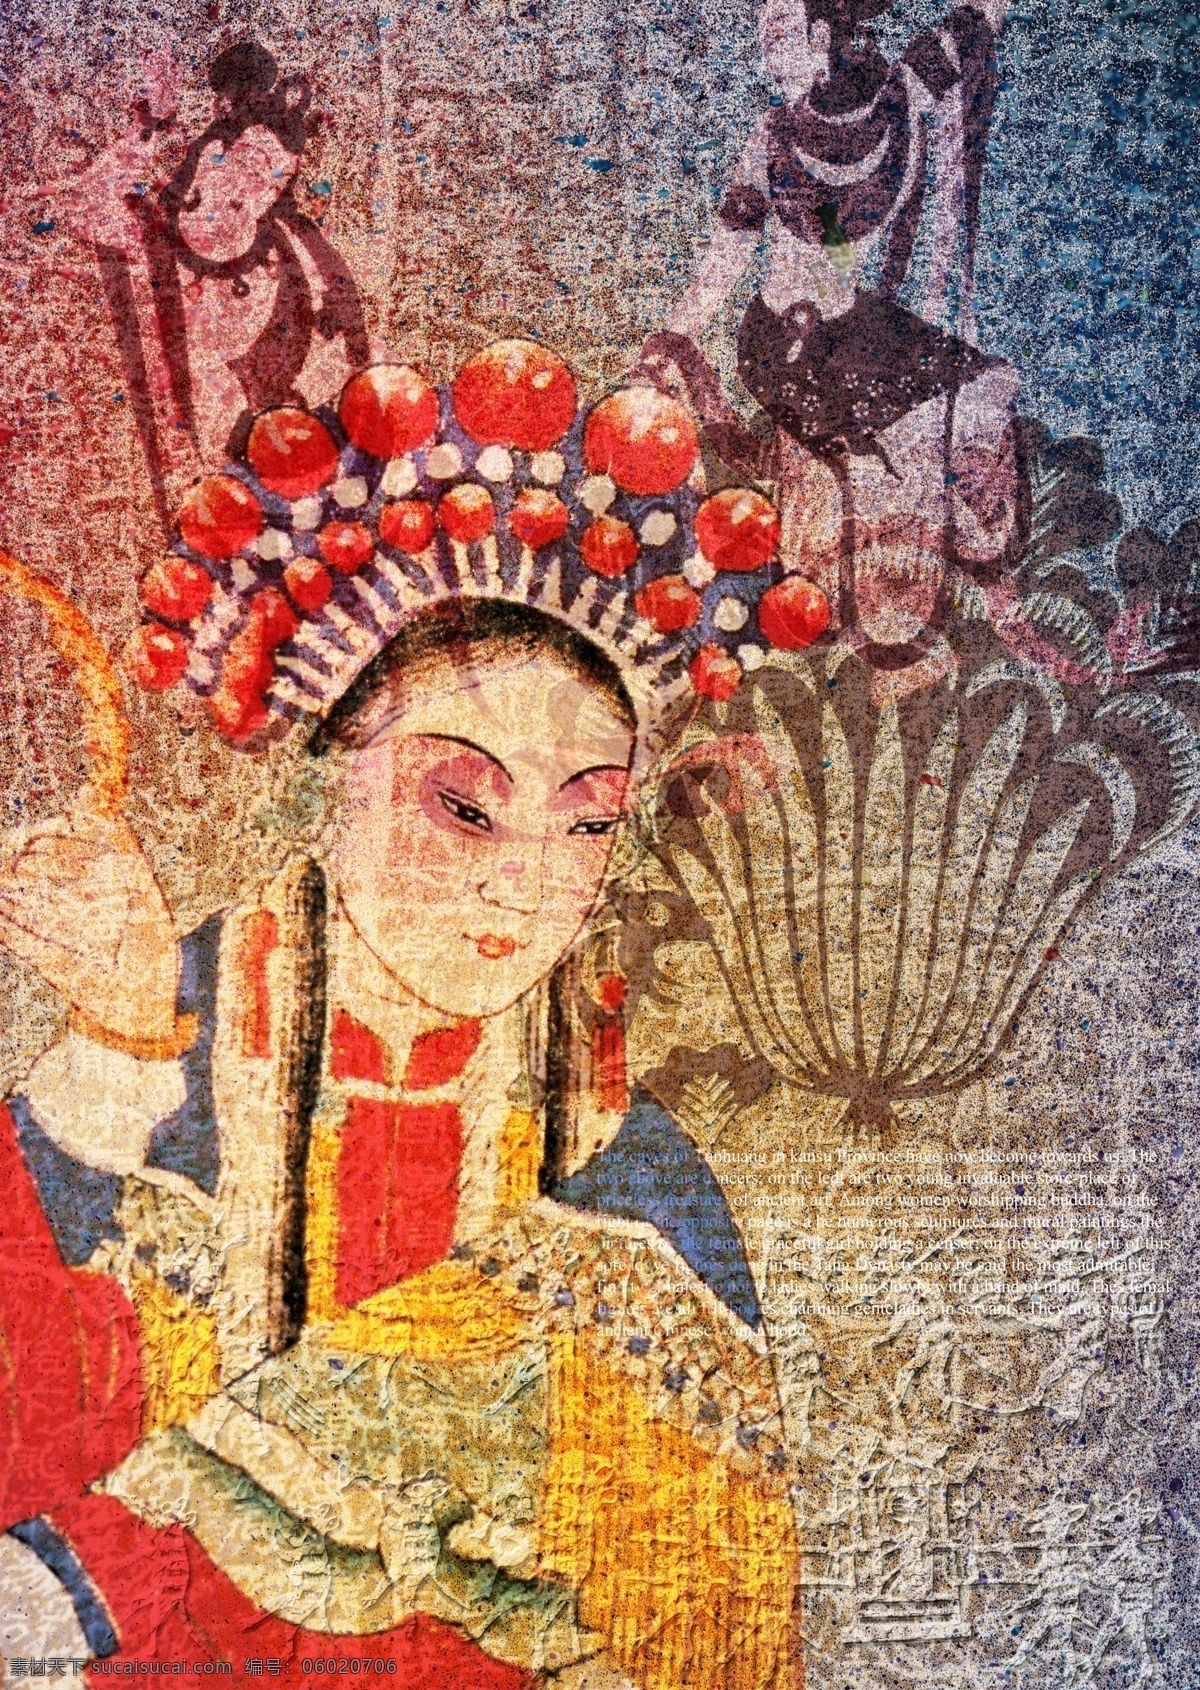 中国戏曲人物 中国戏曲 戏曲人物 中国文化 传统文化